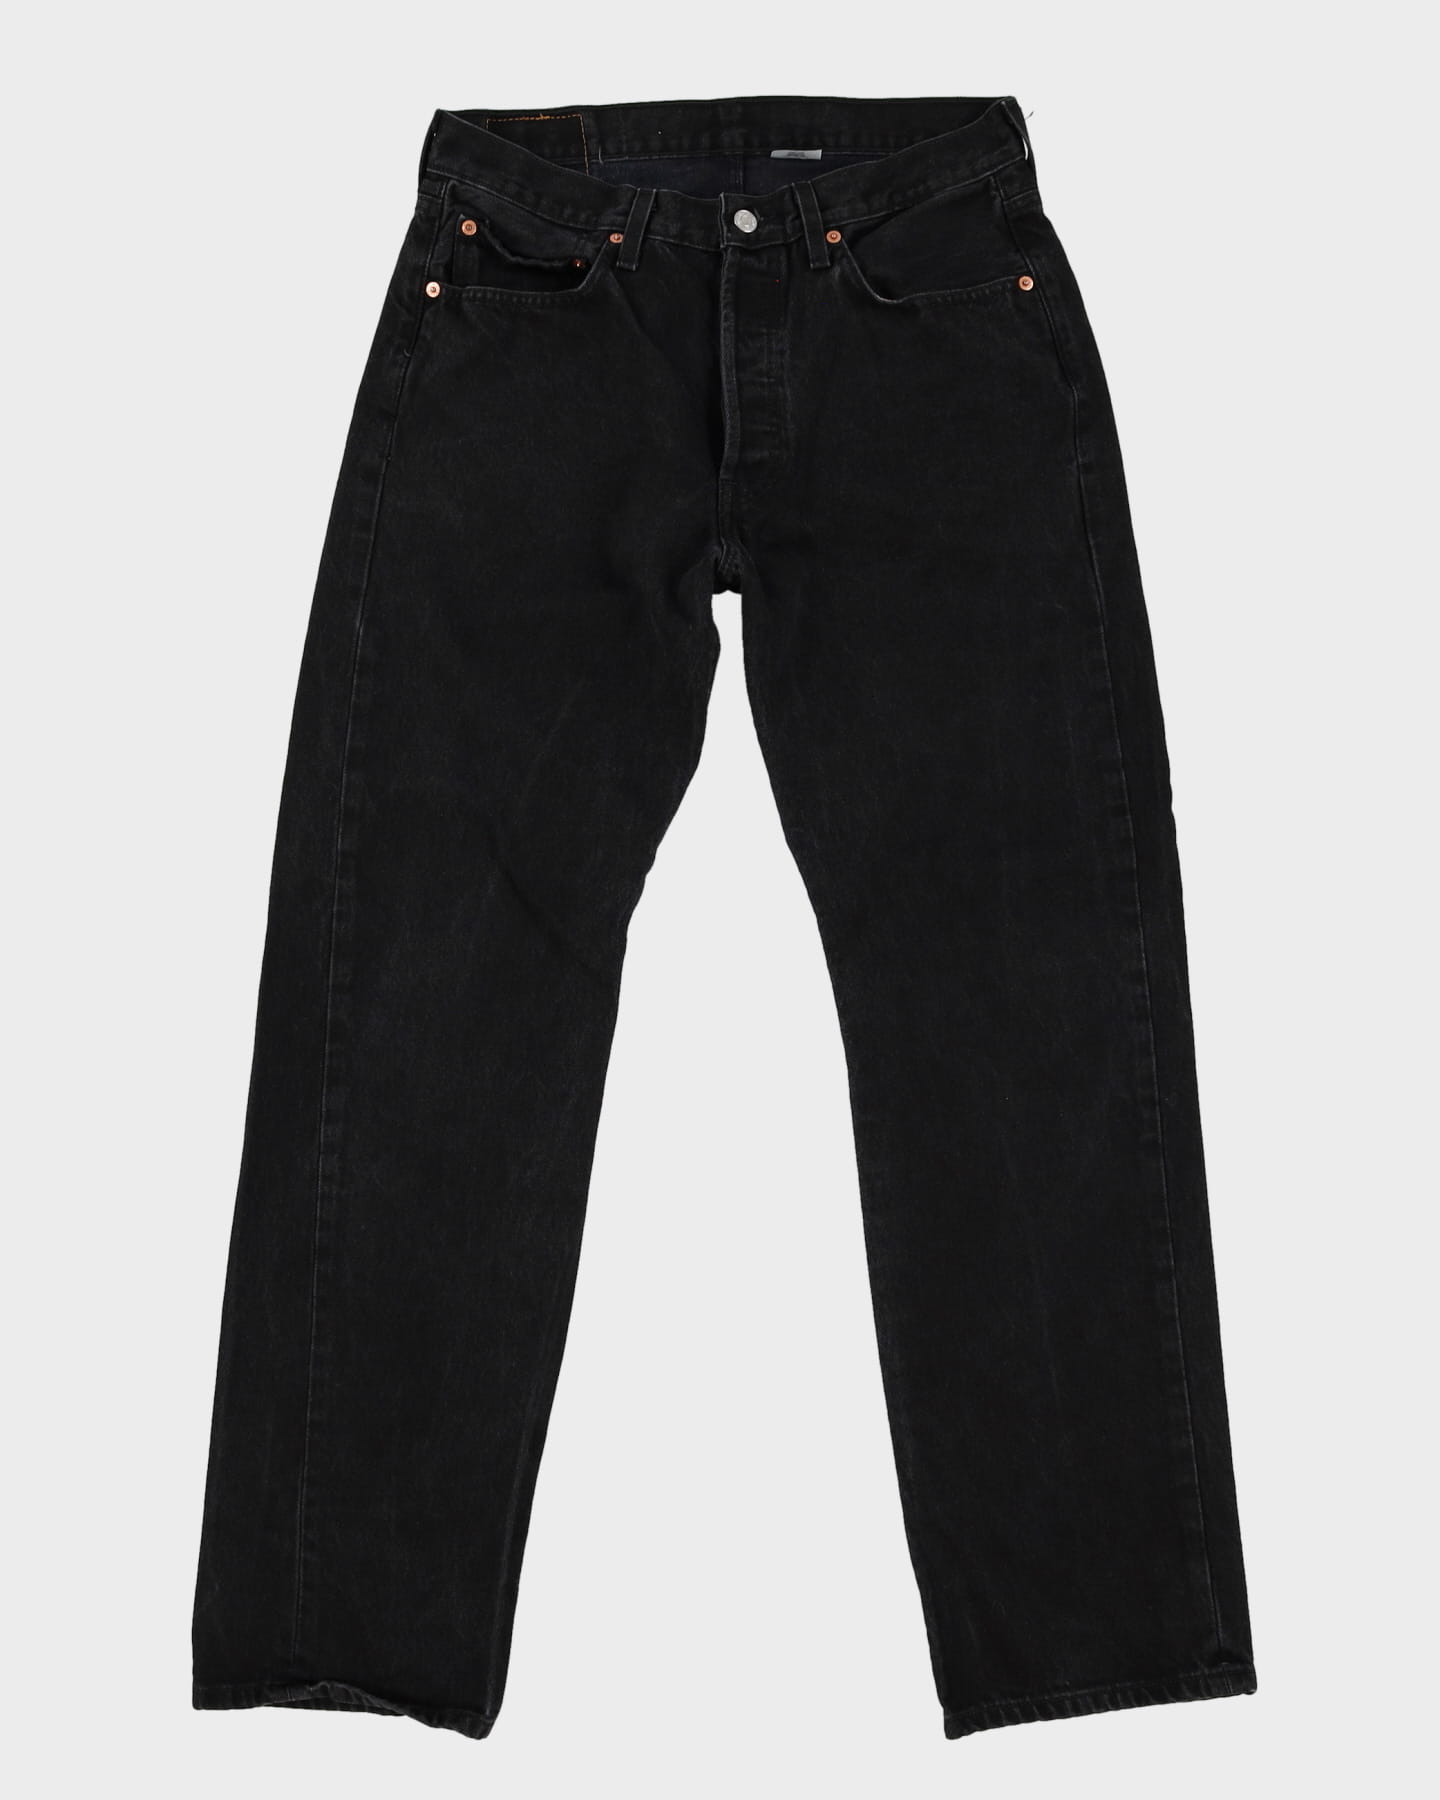 Levi's 501 Dark Wash Black Jeans - W32 L32